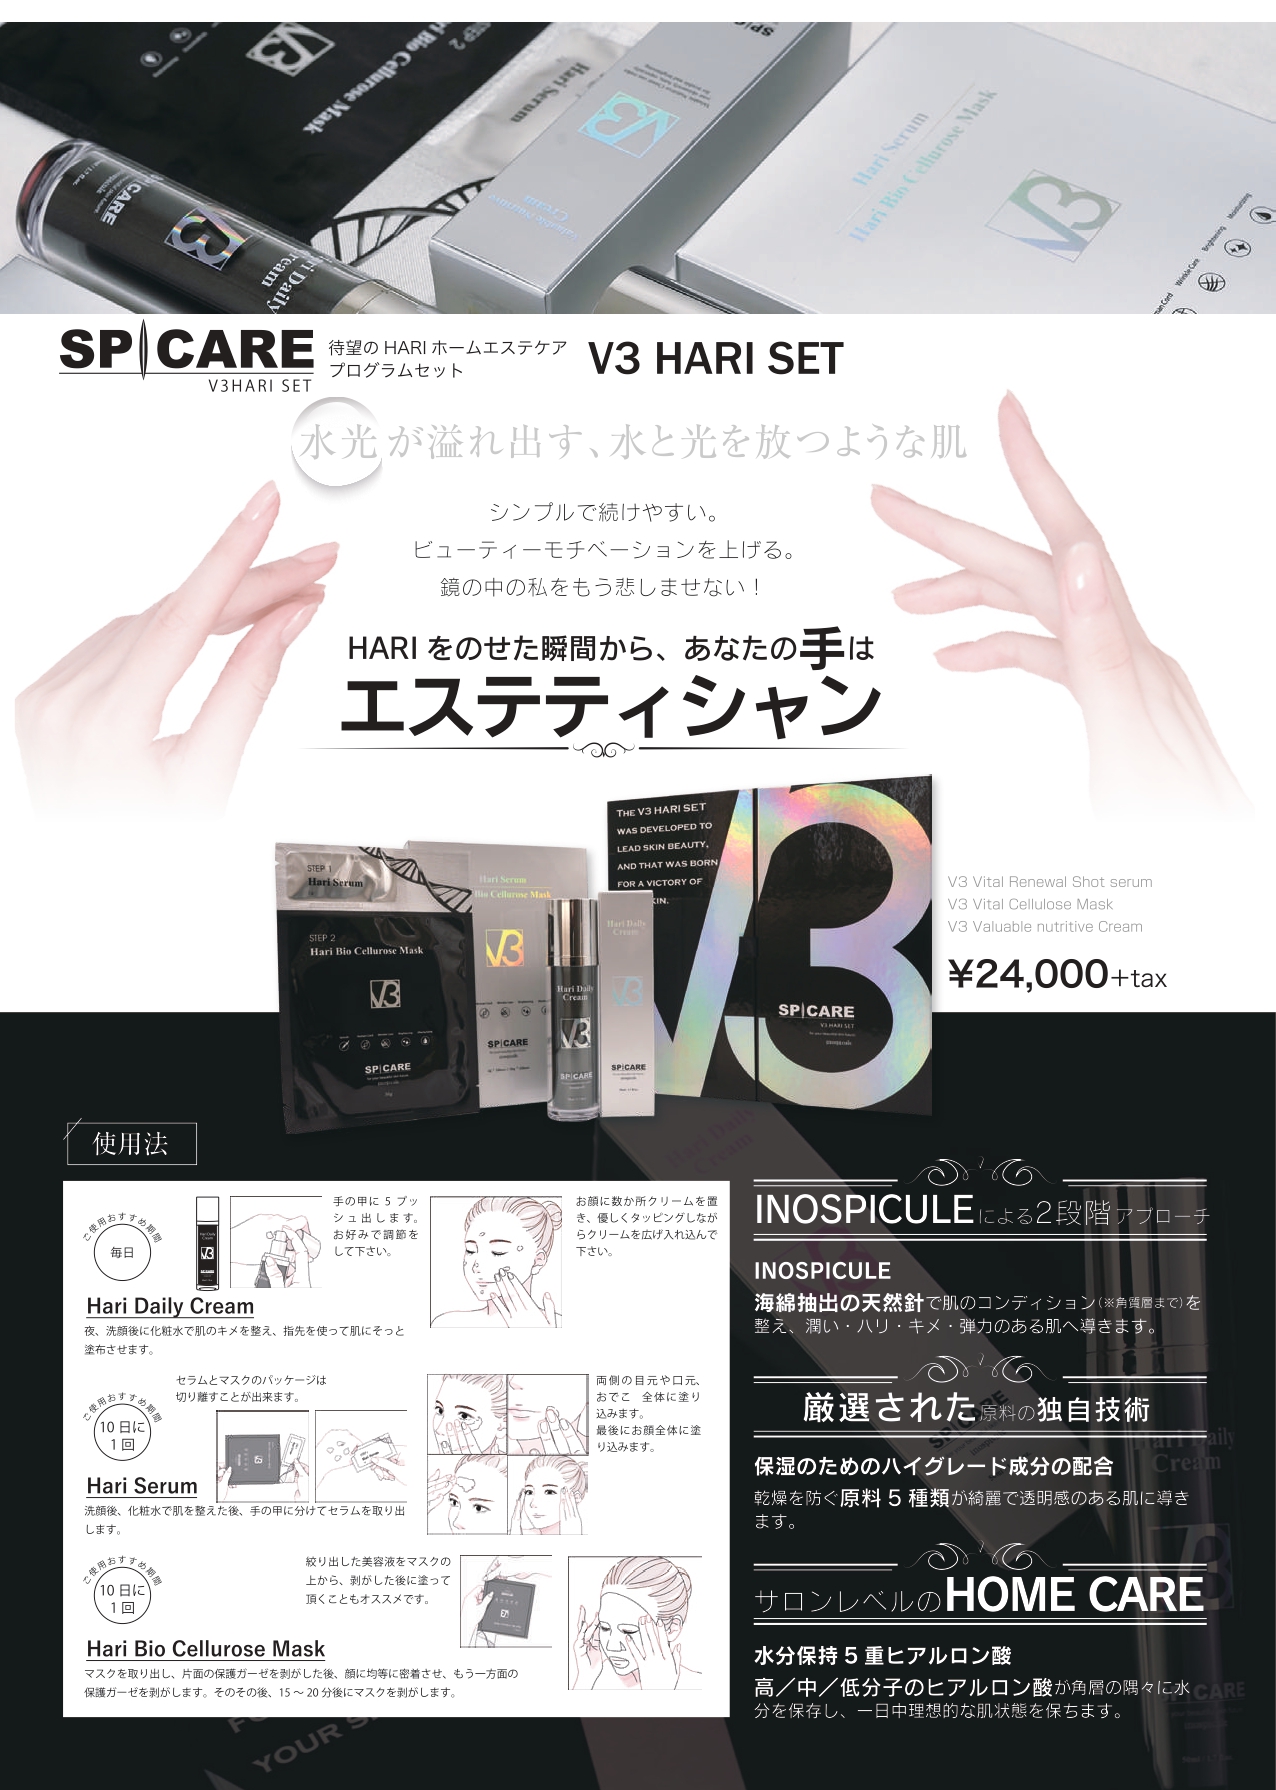 即納セール】 HARI SET スピケア V3 ハリセット の通販 by ゆー's shop